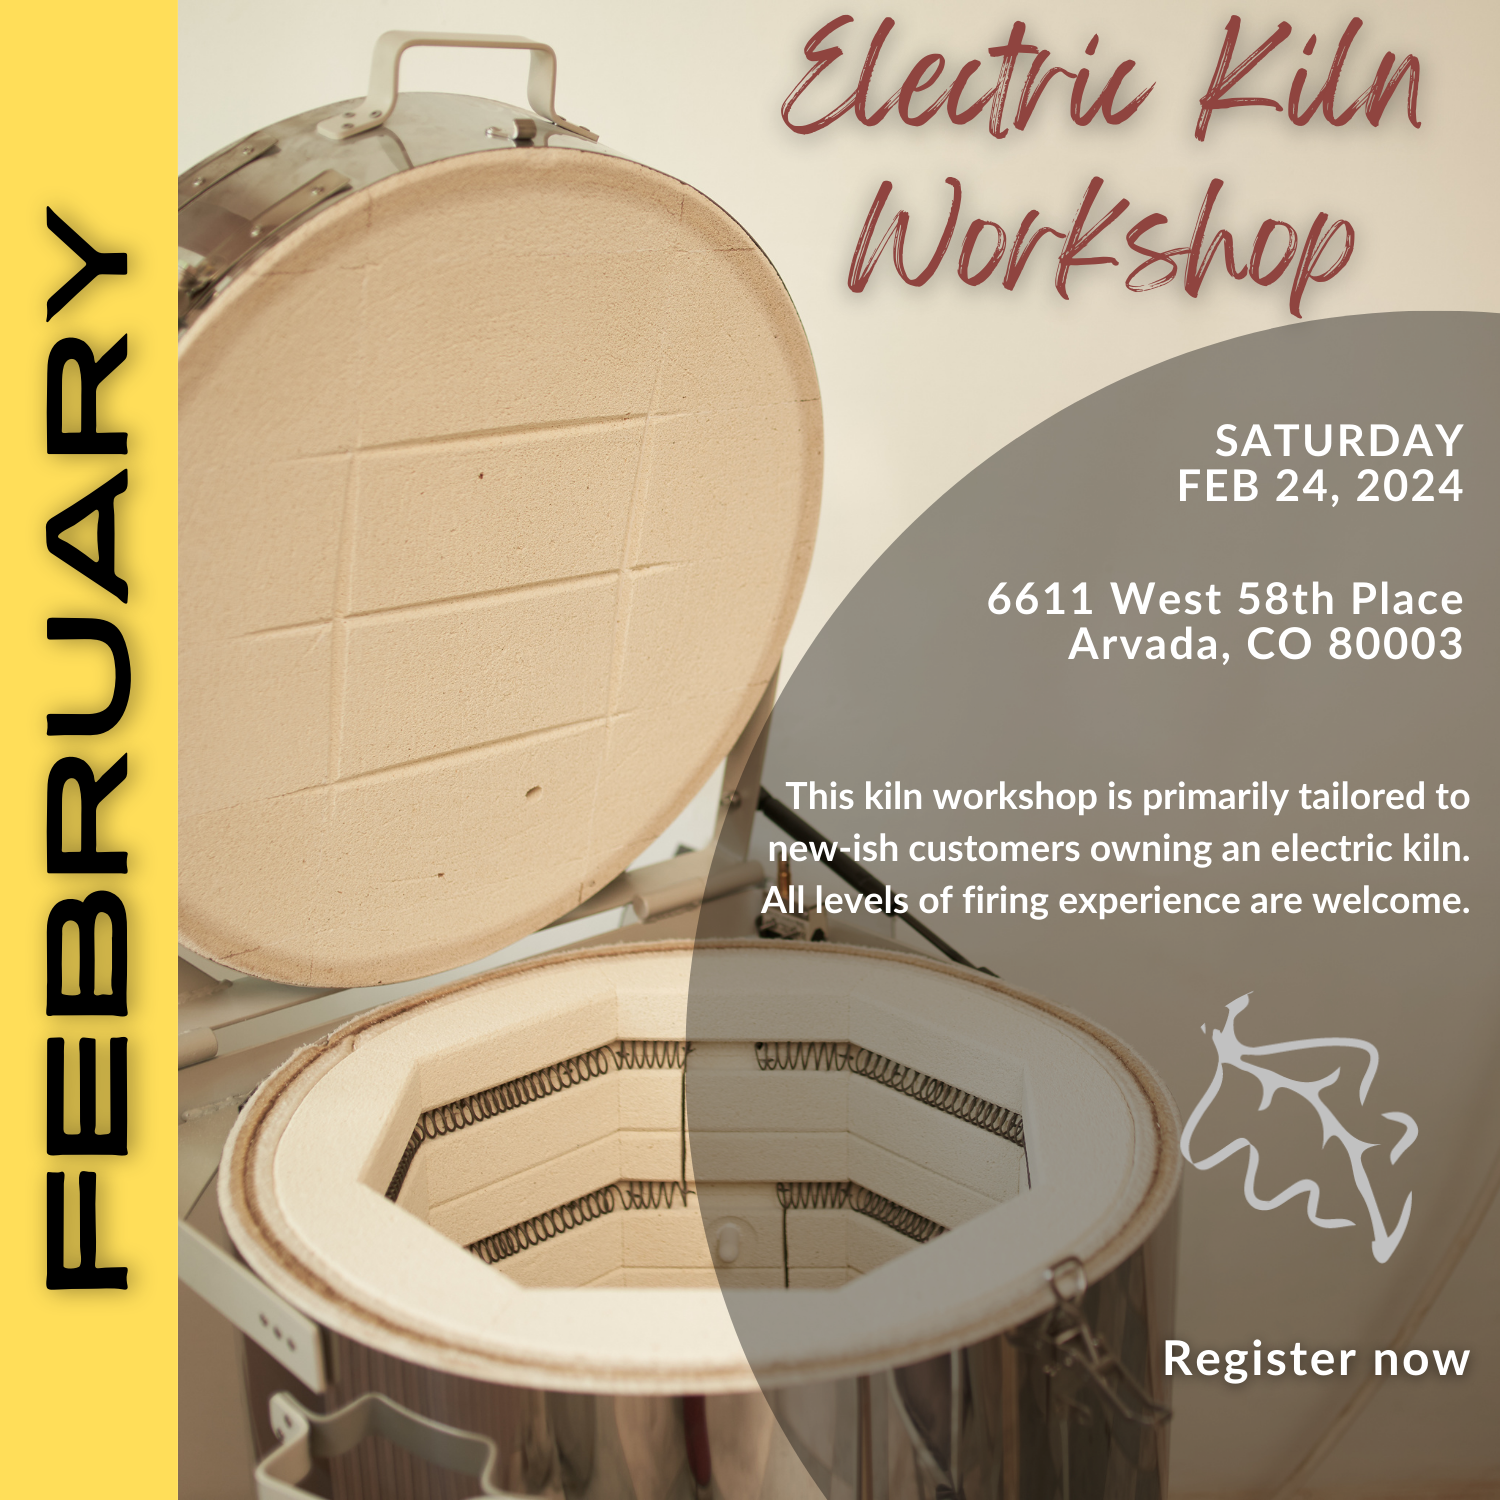 Electric Kiln Workshop - February